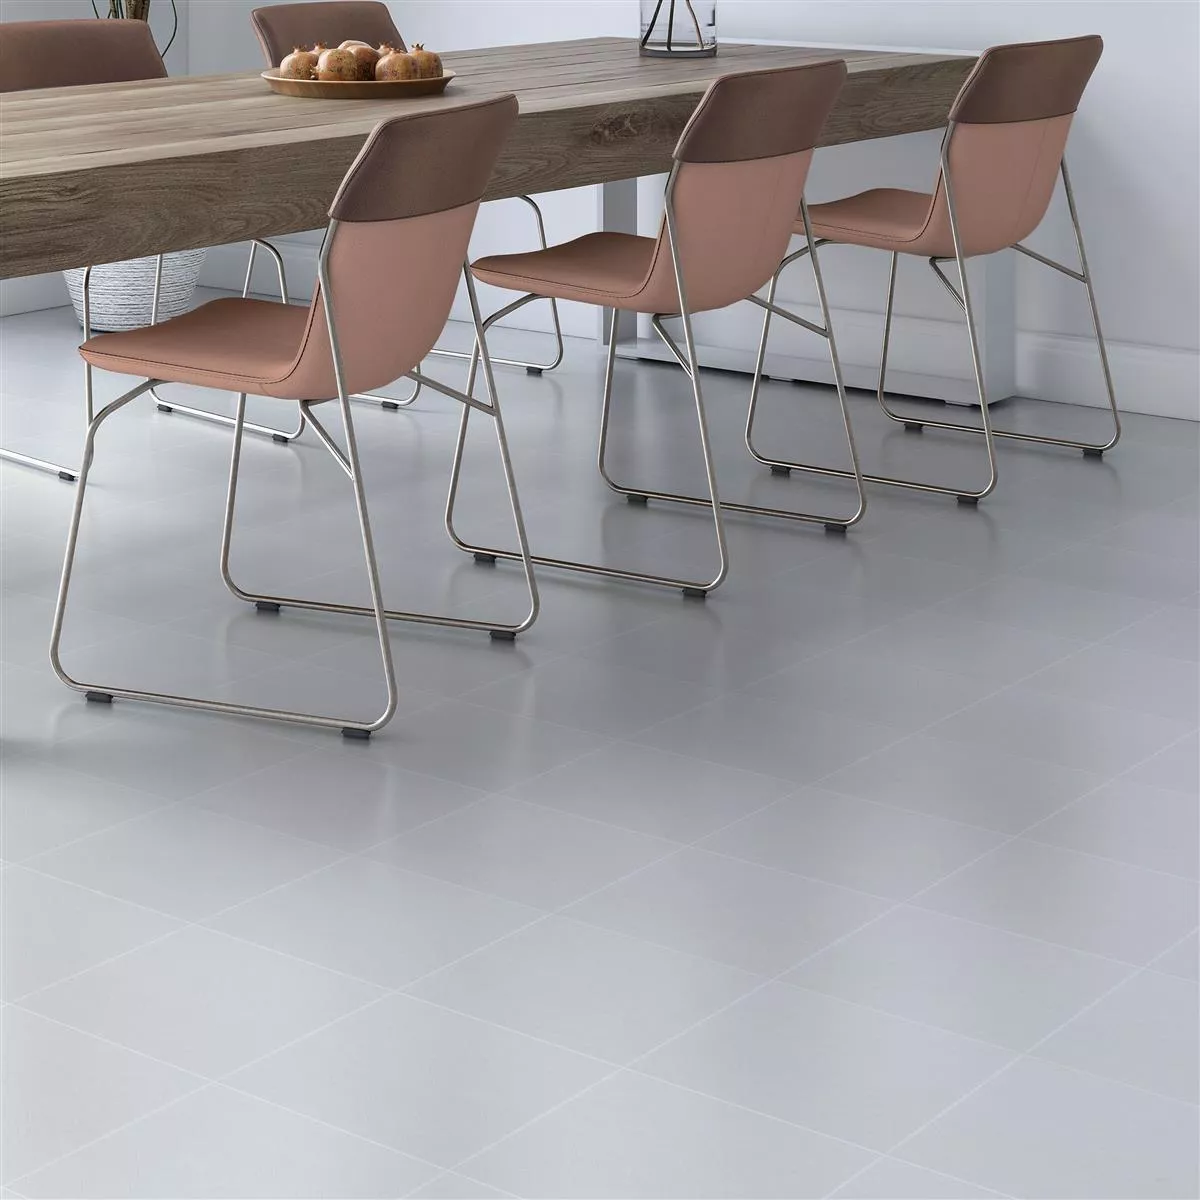 Sample Floor Tiles Cement Optic Wildflower Blanc Basic Tile 18,5x18,5cm